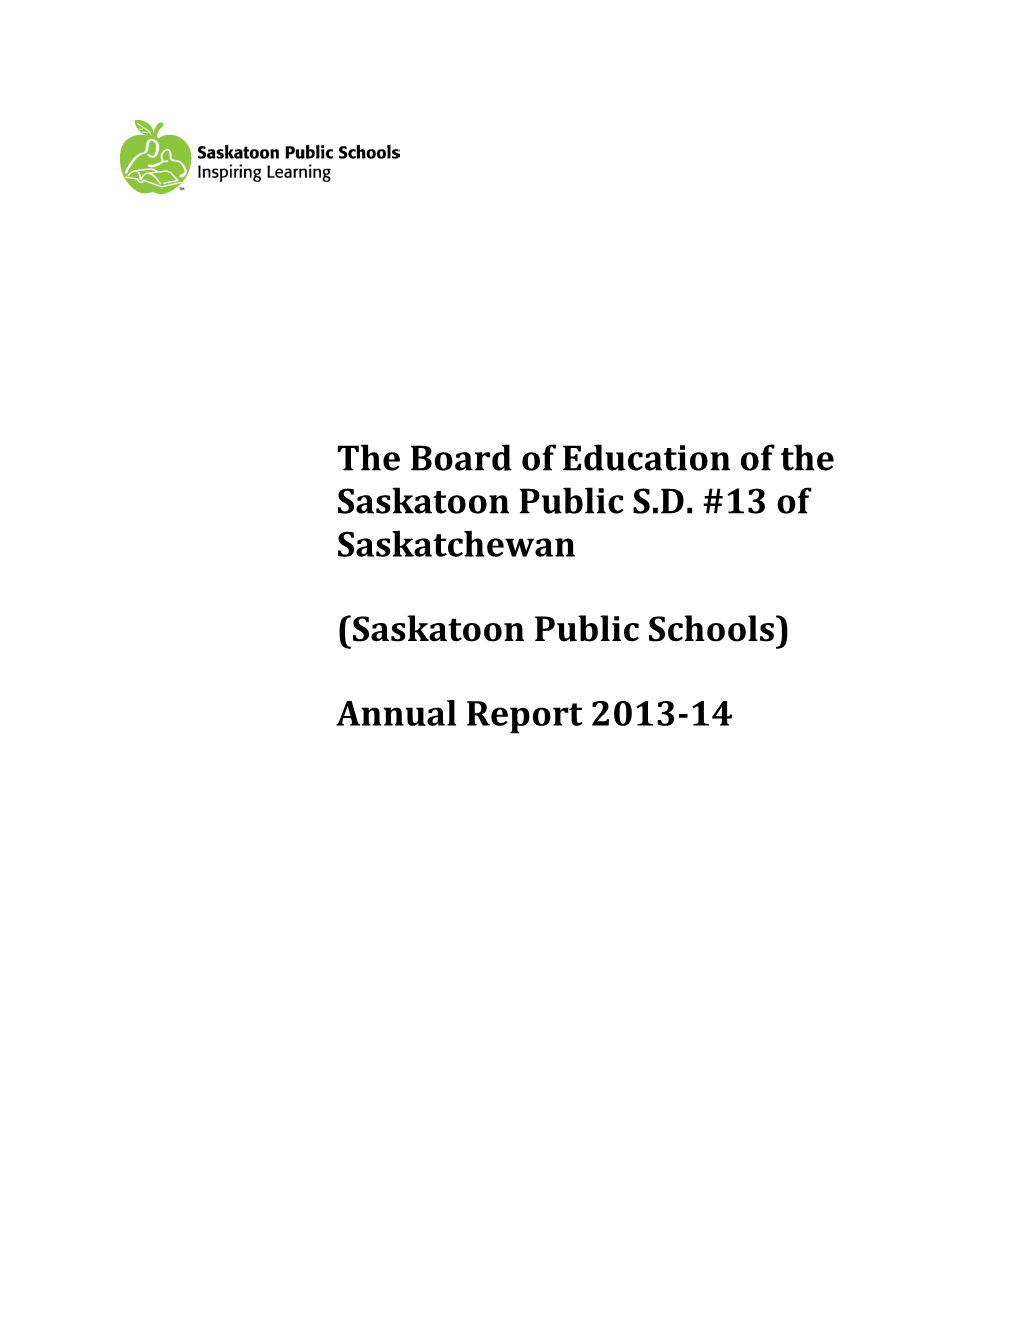 (Saskatoon Public Schools) Annual Report 2013-14